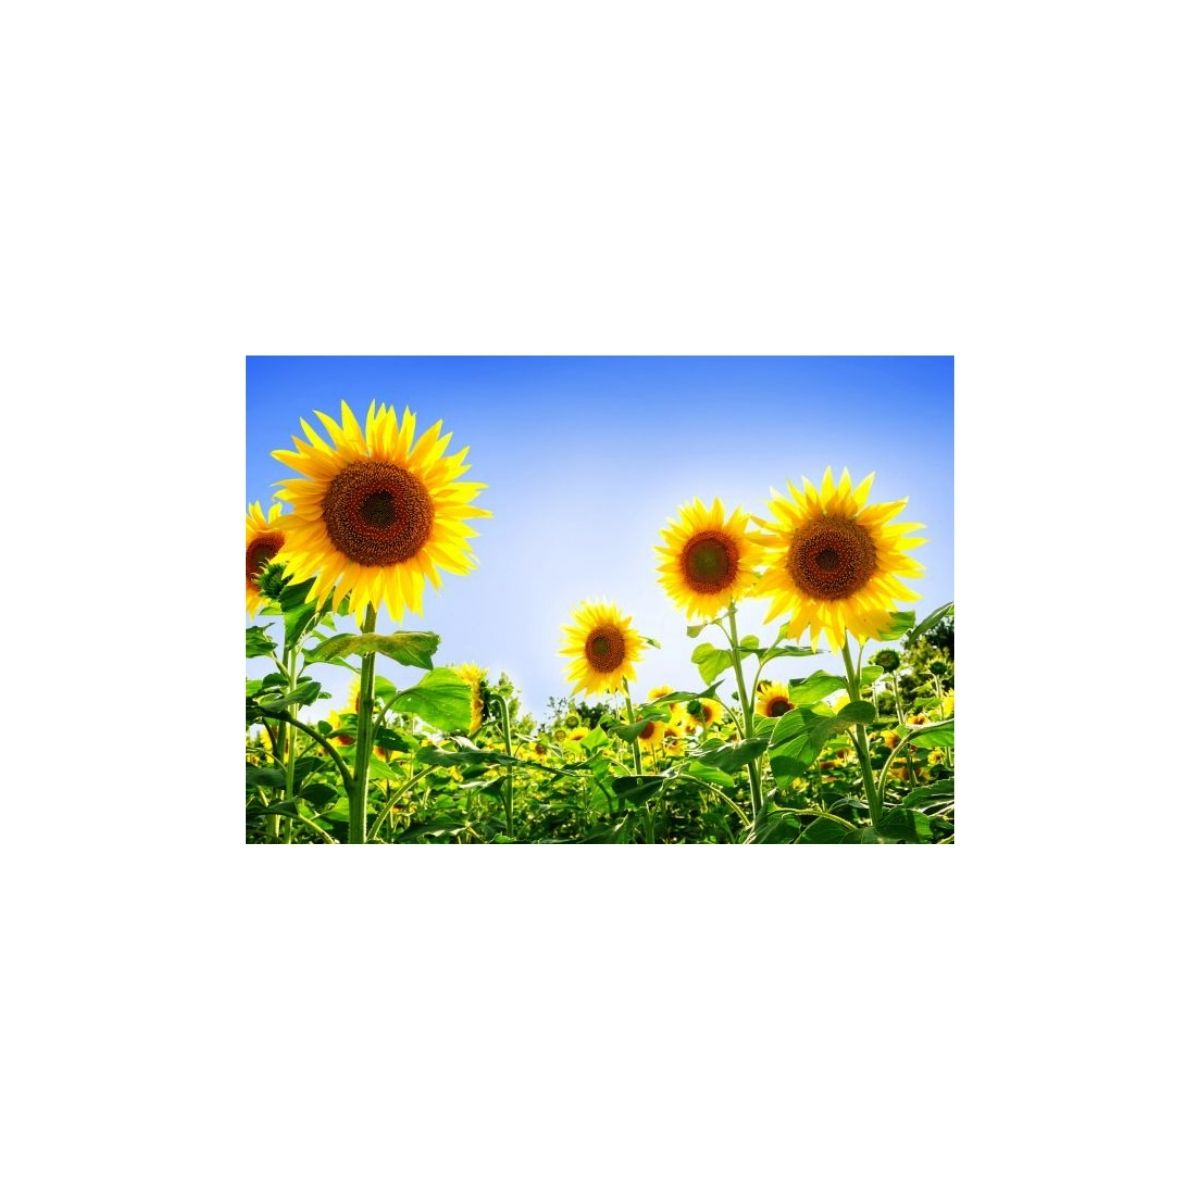 Pachete tehnologice - Pachet erbicidare floarea soarelui Fluence Pack, 5 HA, hectarul.ro